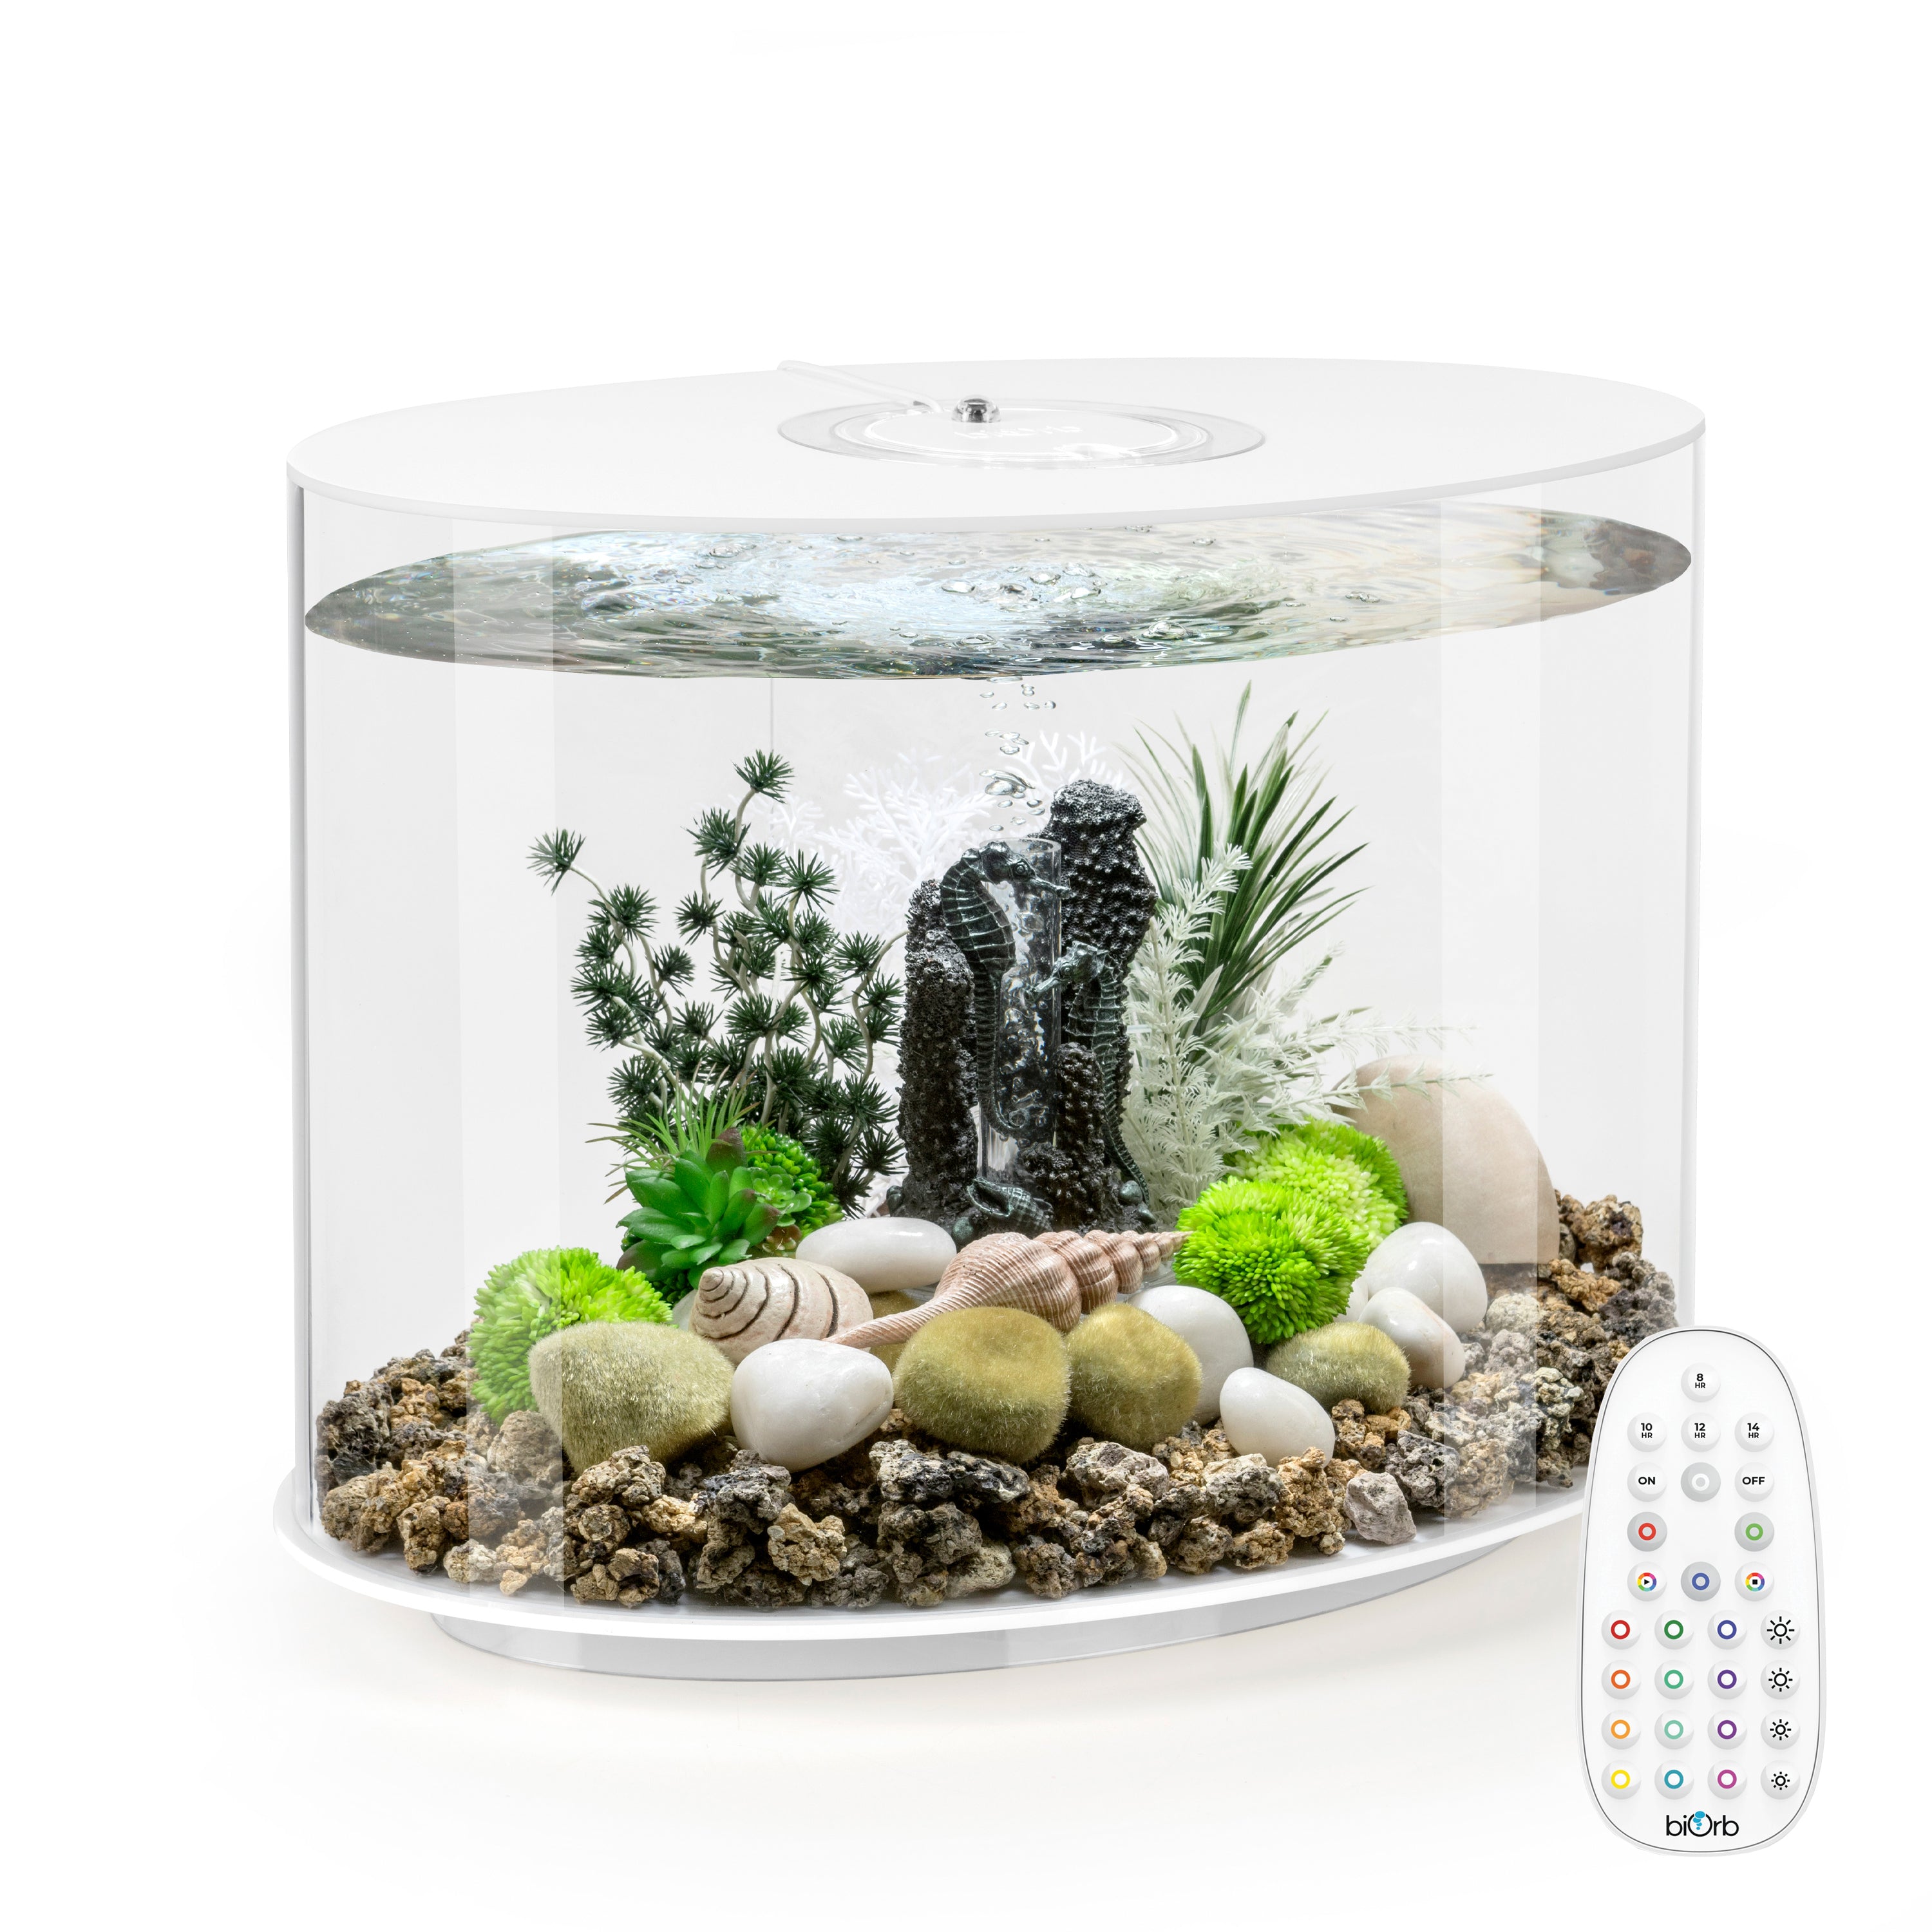 LOOP 30 Aquarium with MCR Light - 8 gallon biOrb